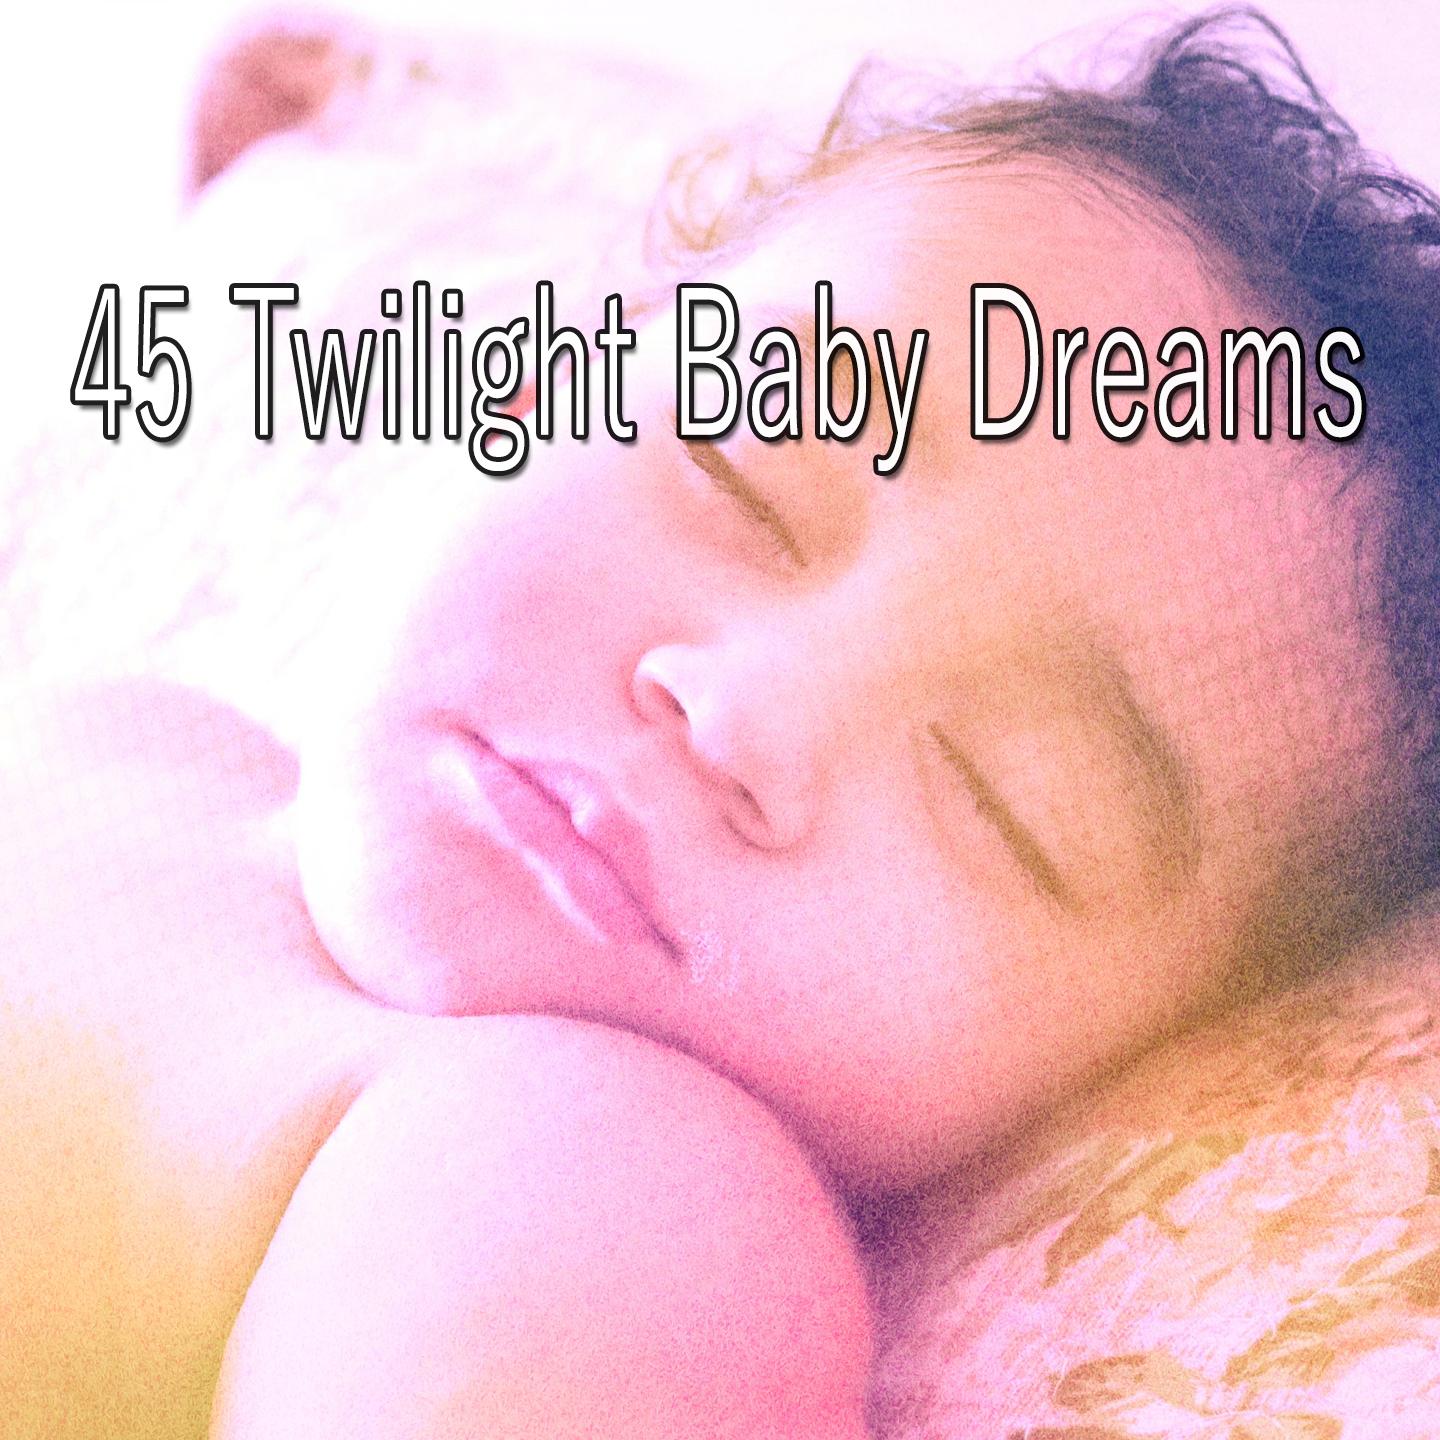 45 Twilight Baby Dreams